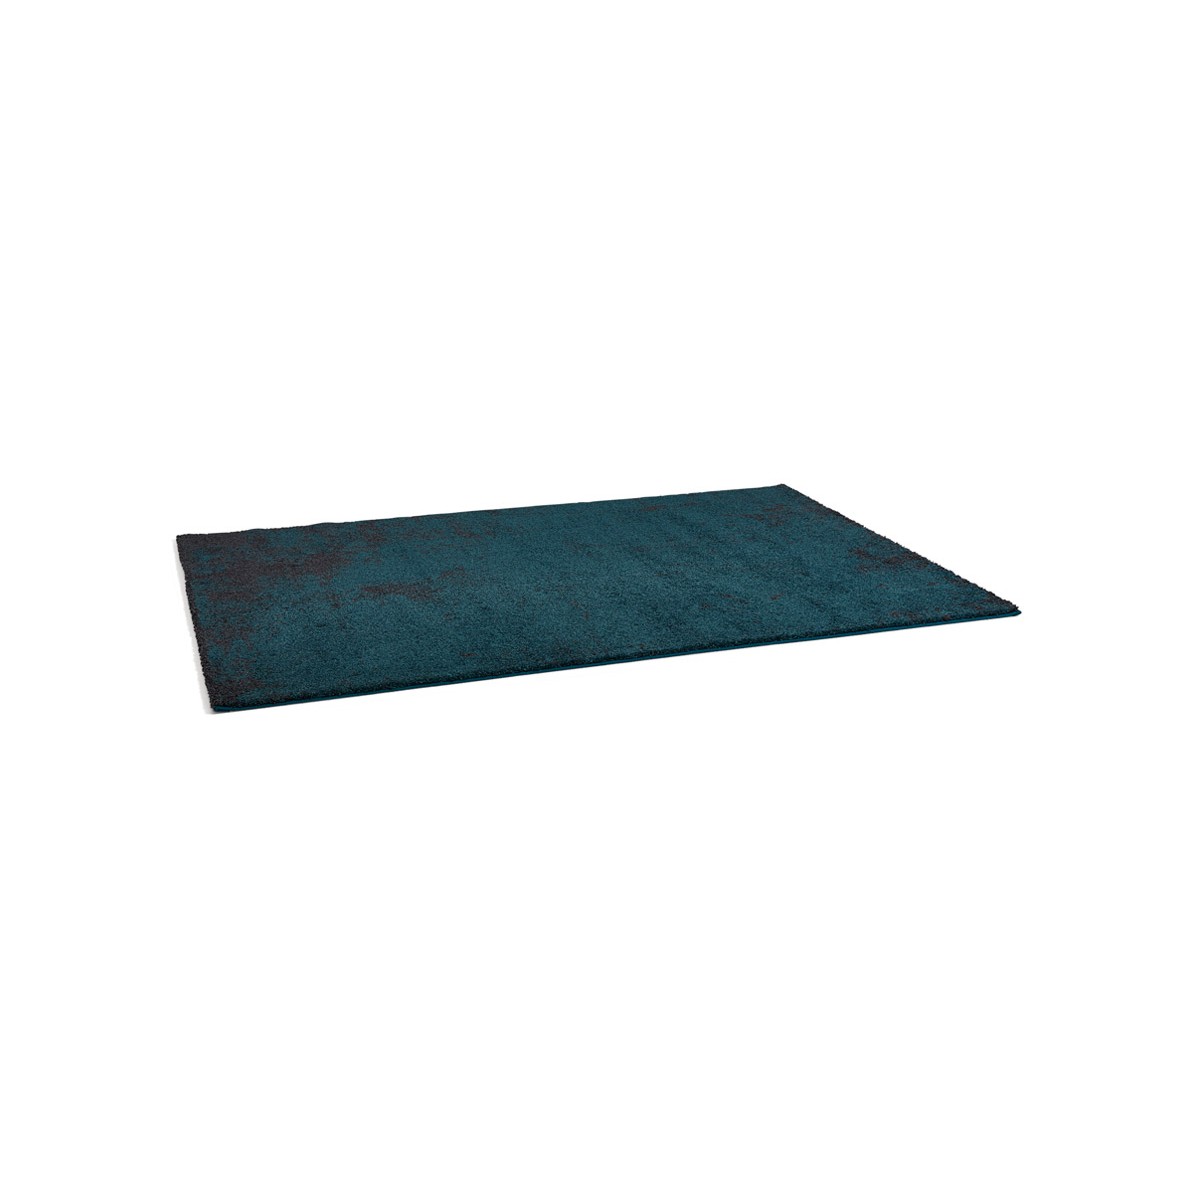 Super confortevole e accogliente blu e nero design tappeto rettangolare.